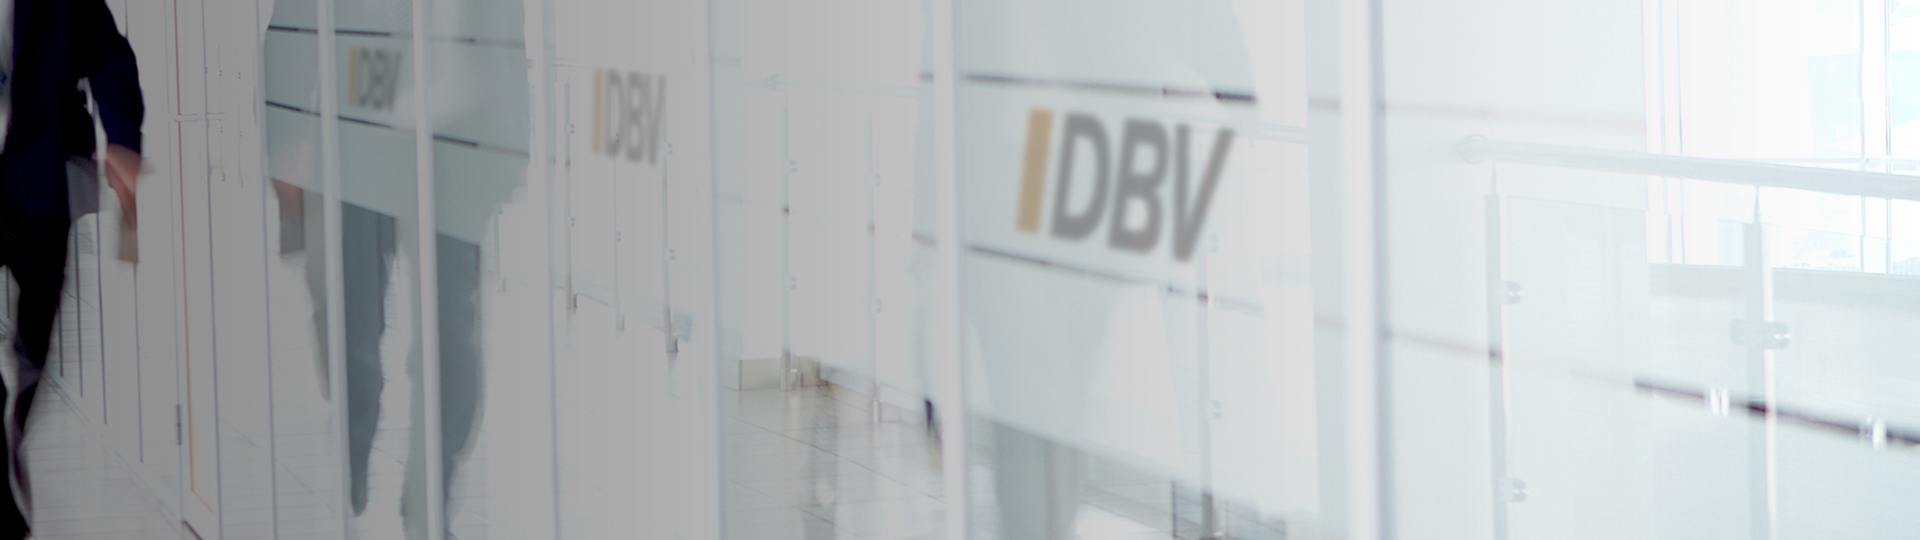 Dienstunfähigkeitsversicherung | DBV Bonn Dietmar Kaiser